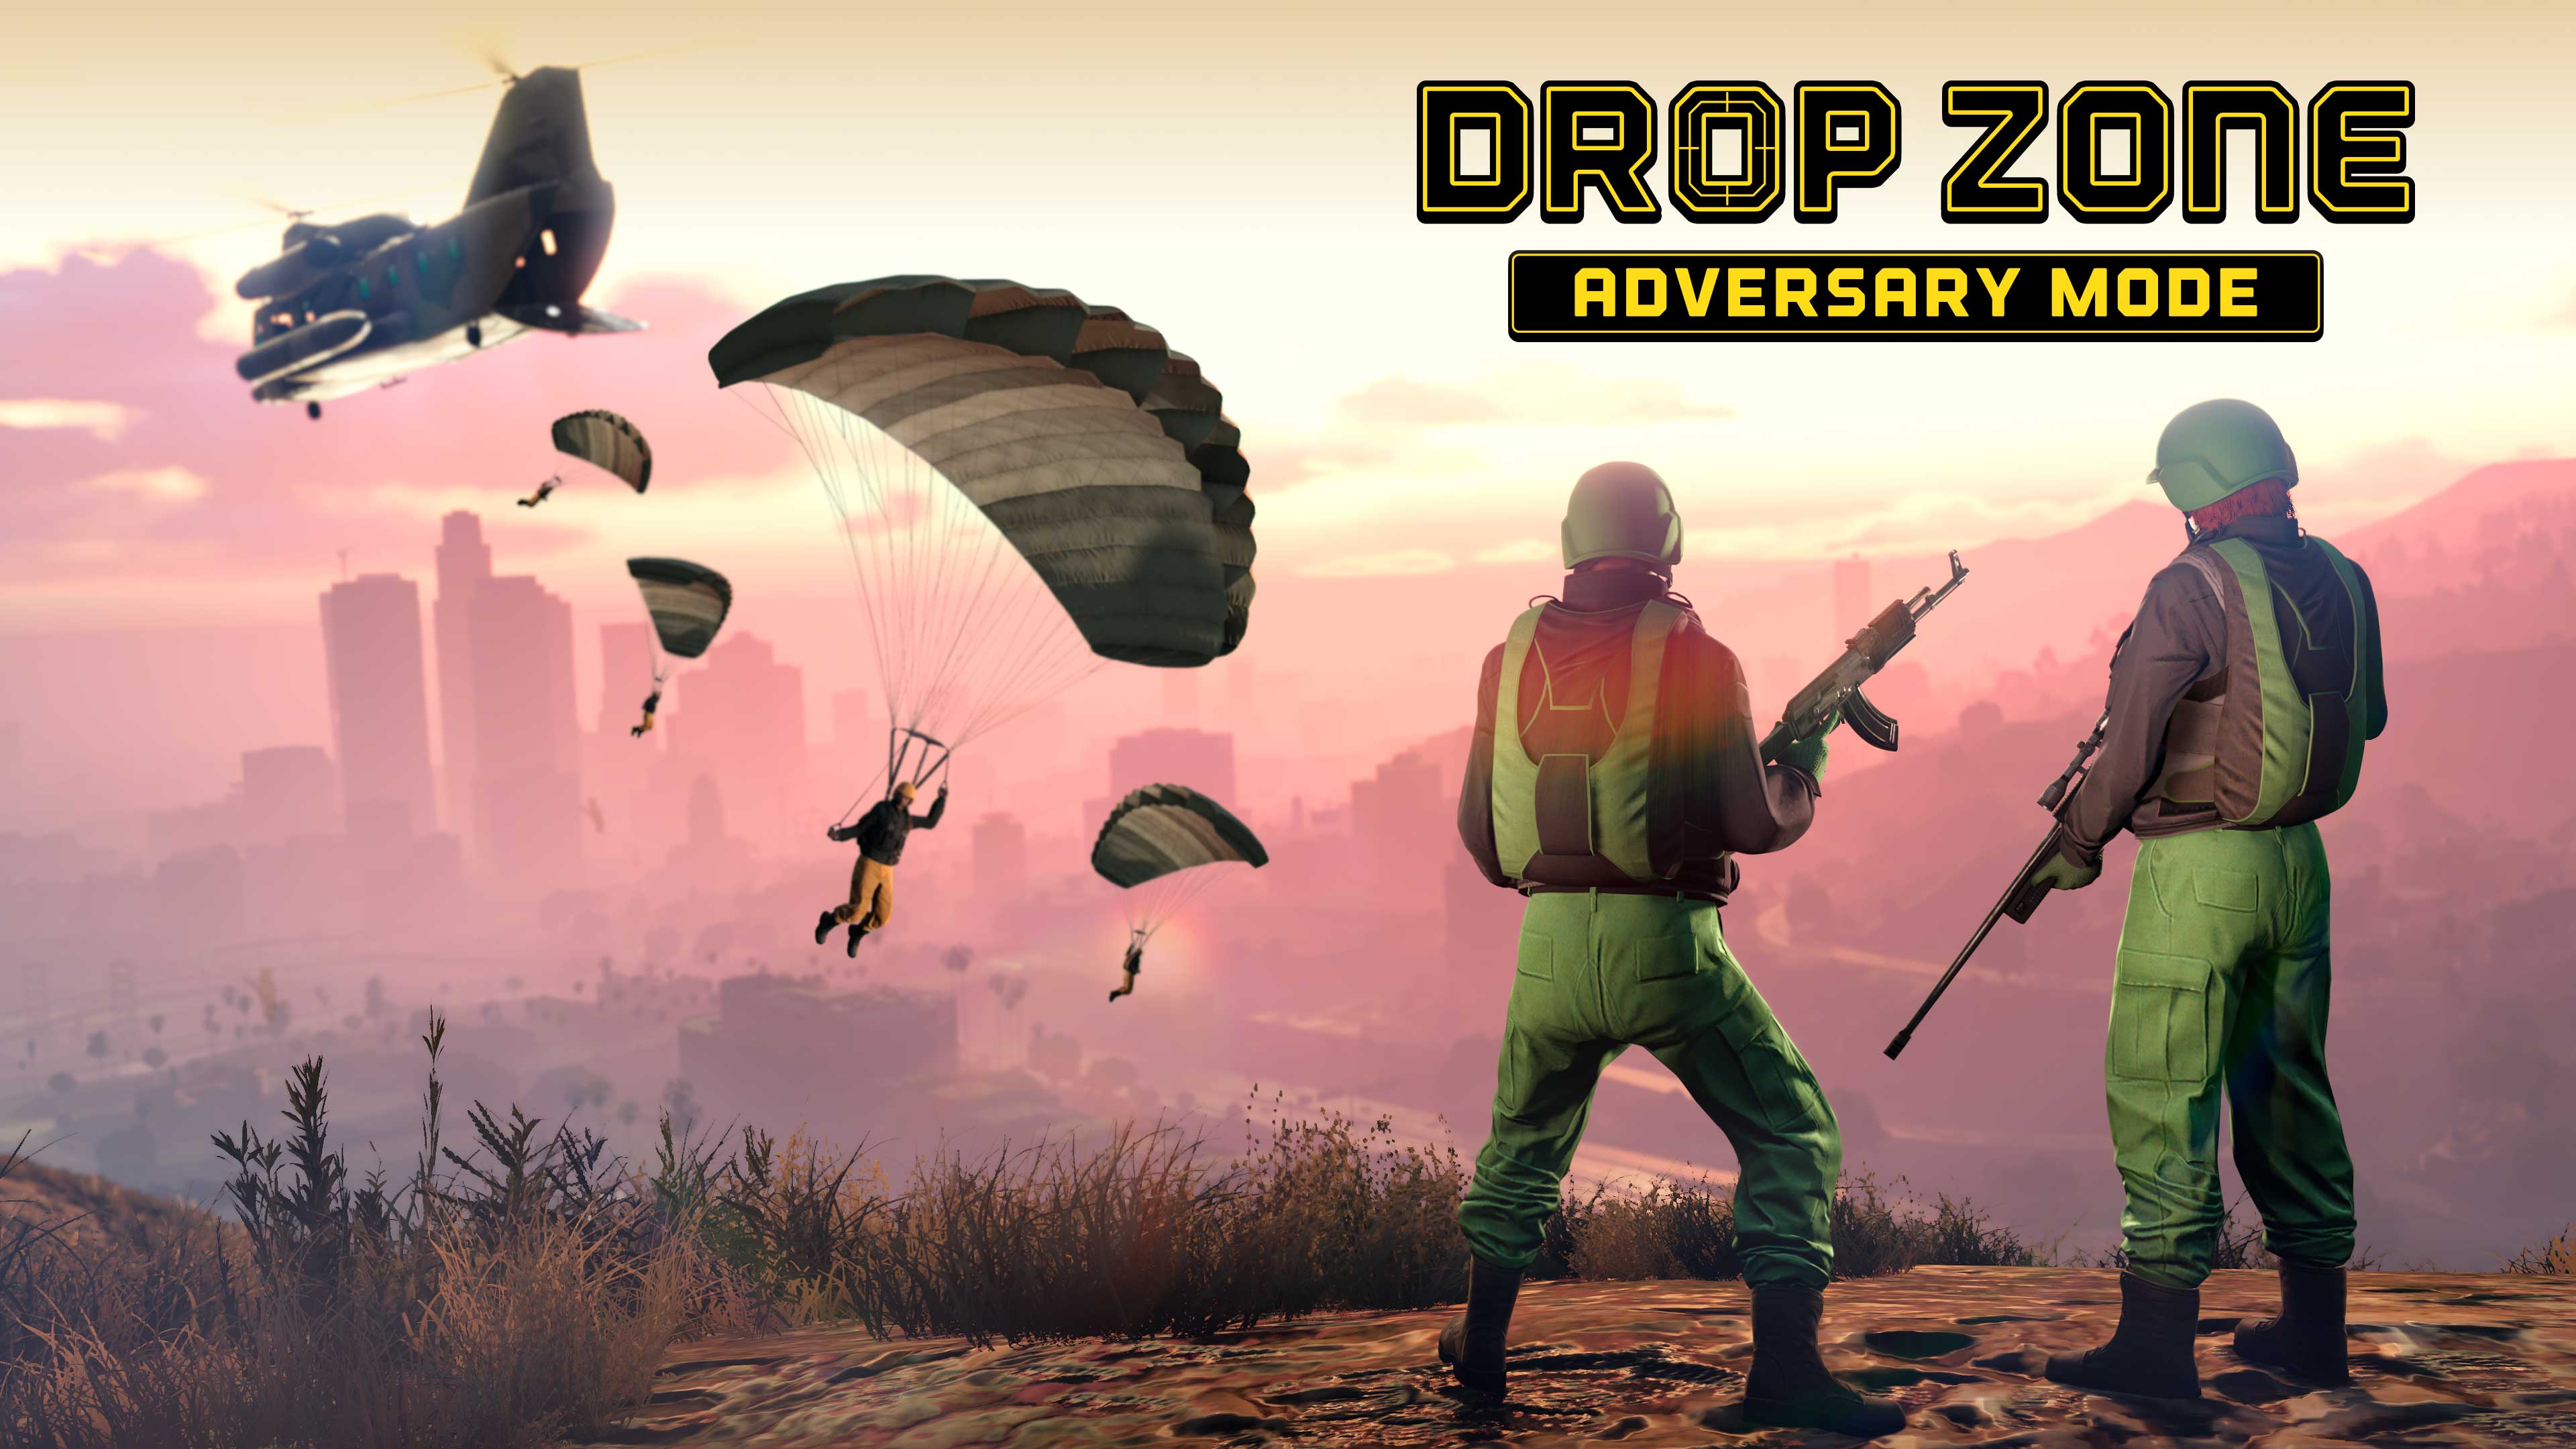 Pôster do Modo Adversário Zona de Salto do GTA Online com diversos personagens do GTA Online saltando de paraquedas perto de uma colina onde dois outros personagens estão observando com armas.